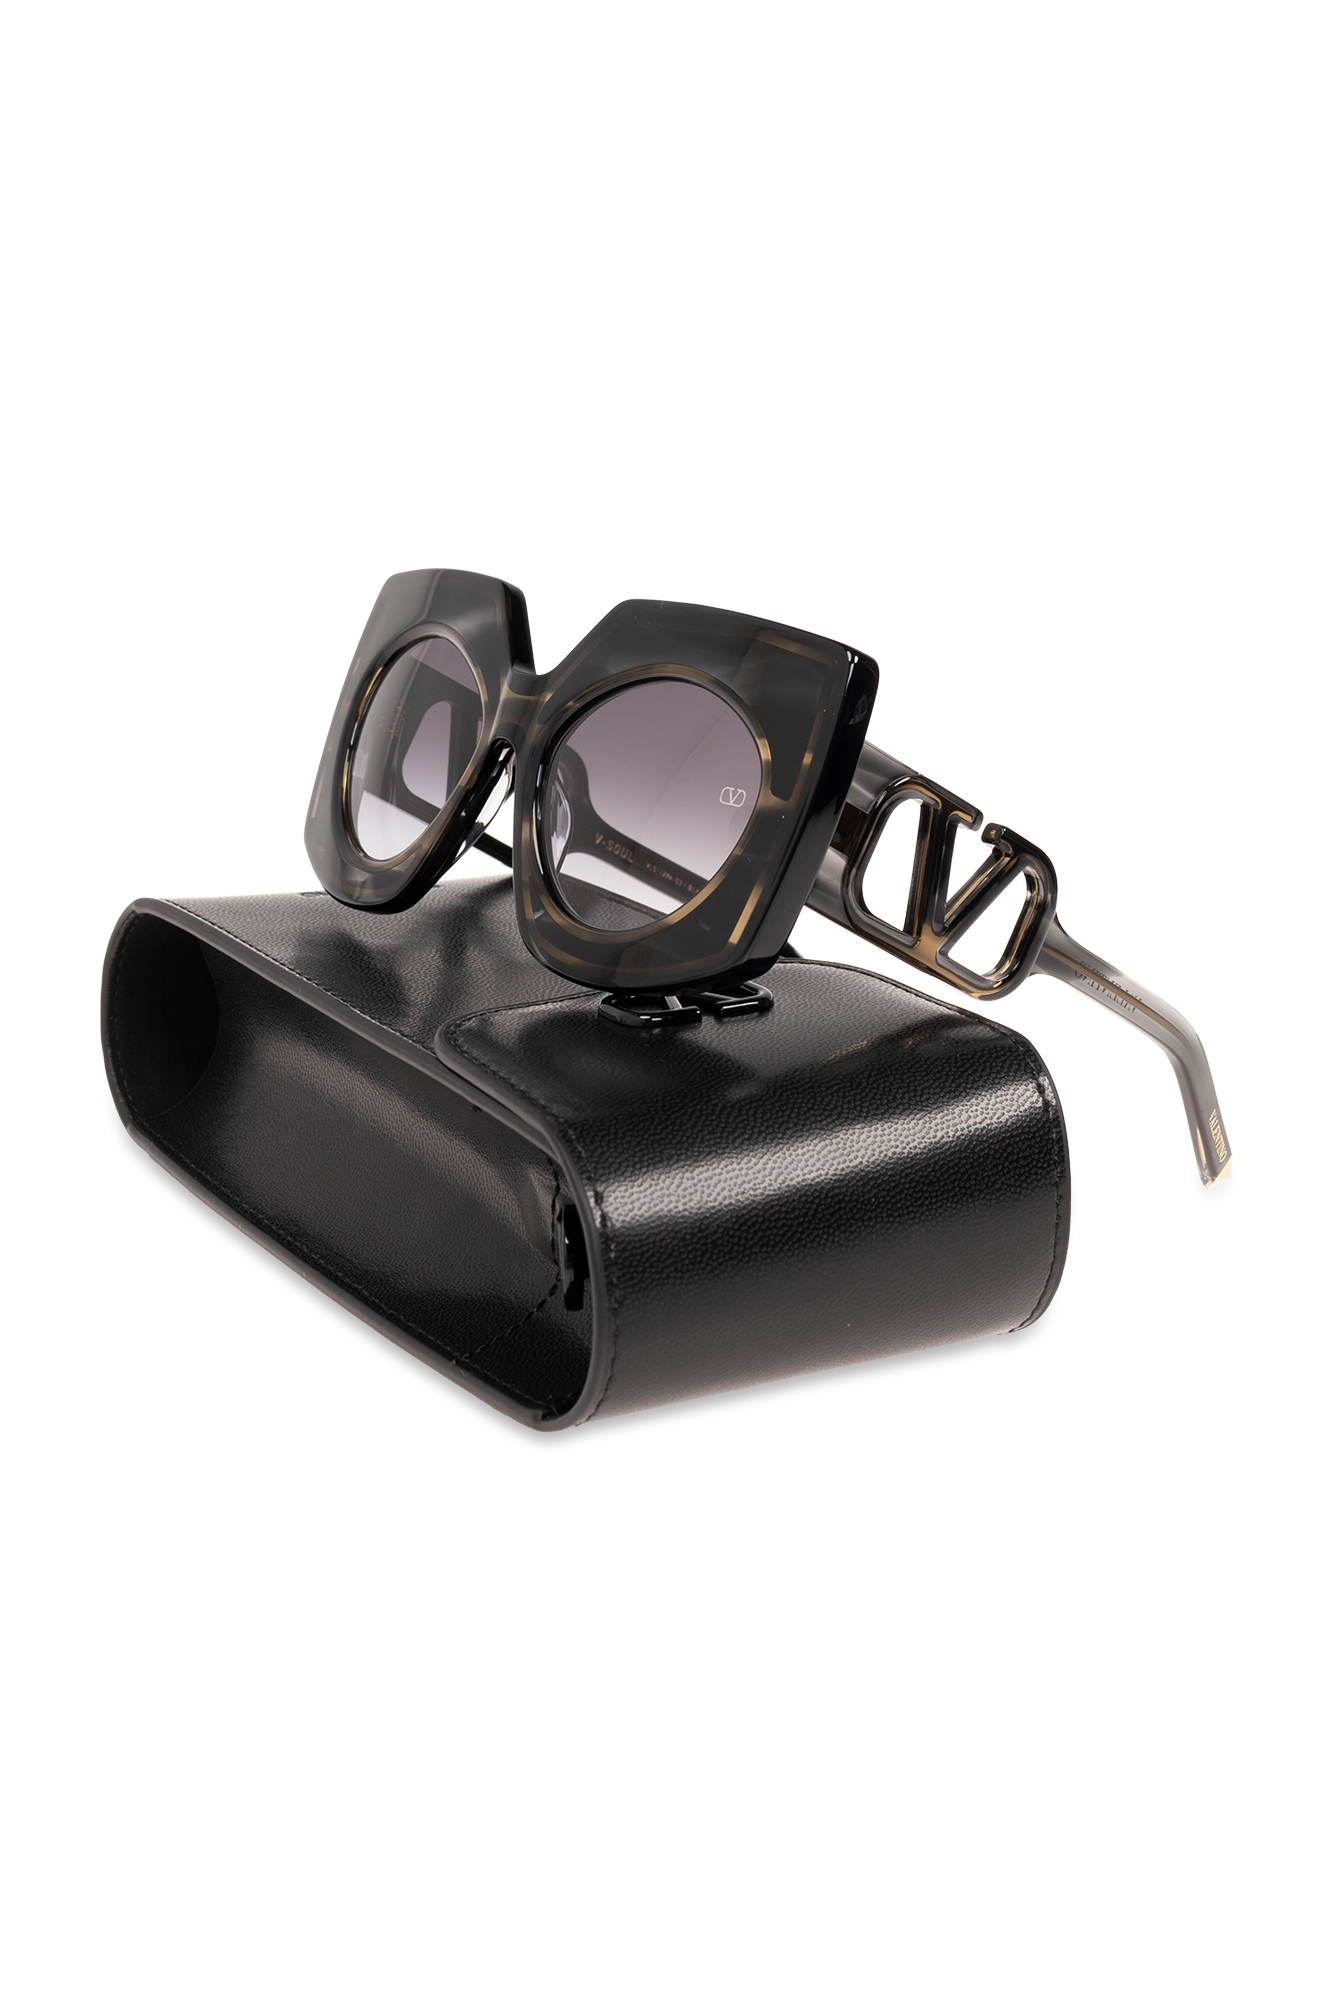 Valentino Eyewear ‘V-Soul’ sunglasses